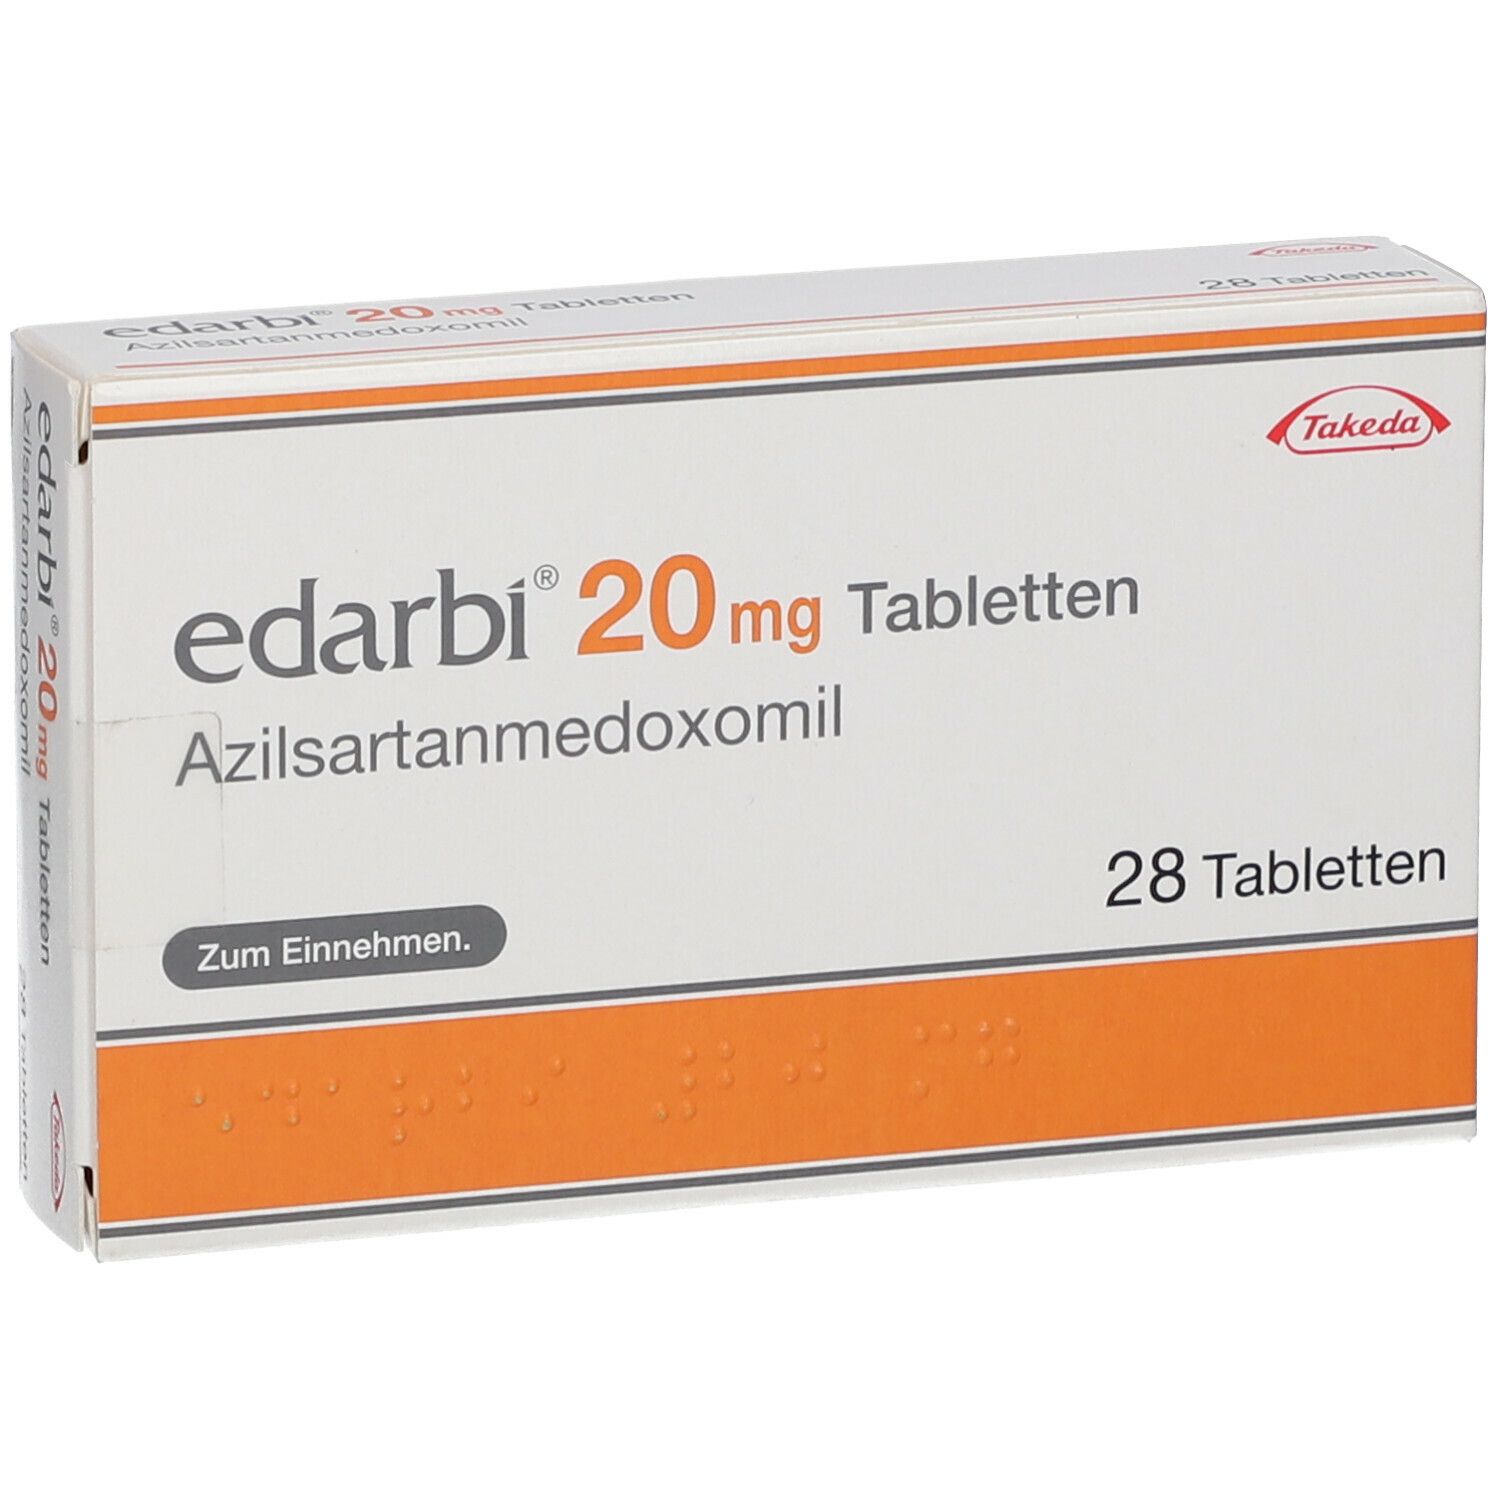 Edarbi® 20 mg